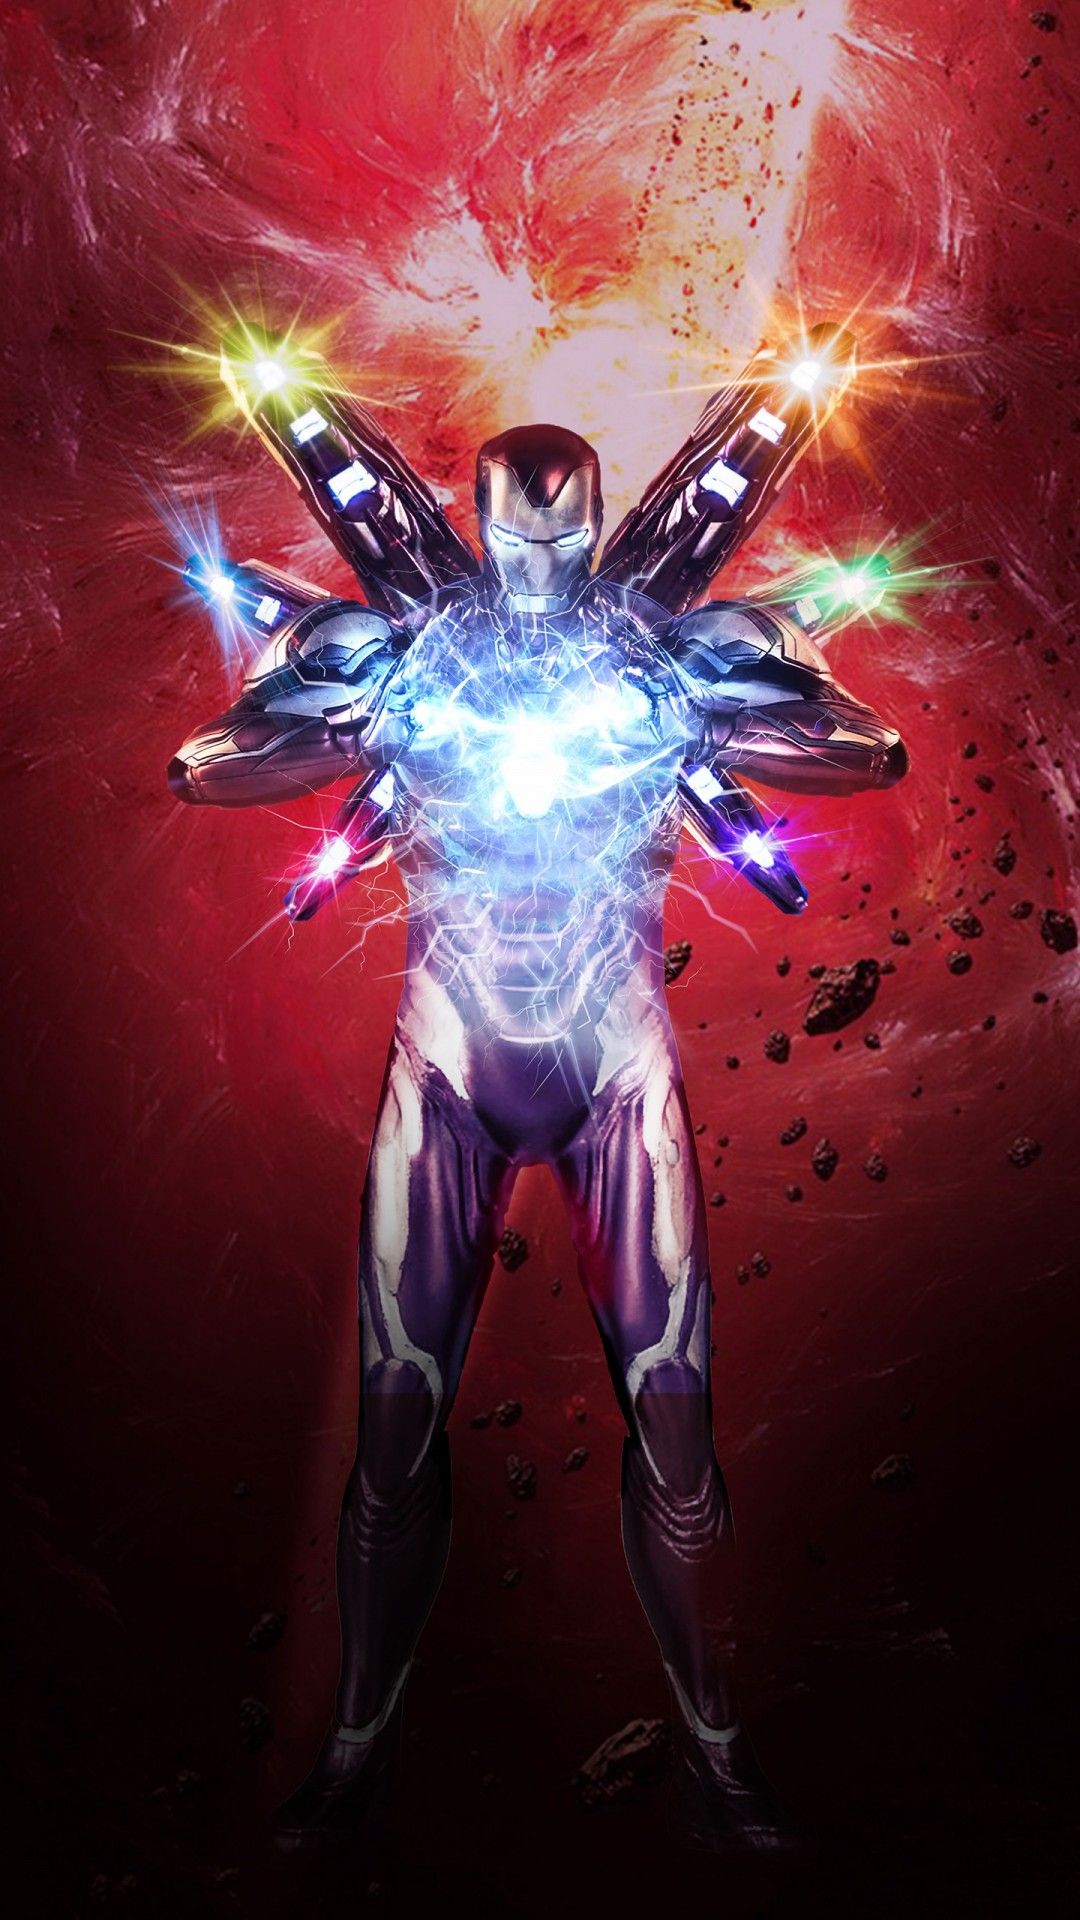 Iron Man in Avengers Endgame 4K Wallpaper